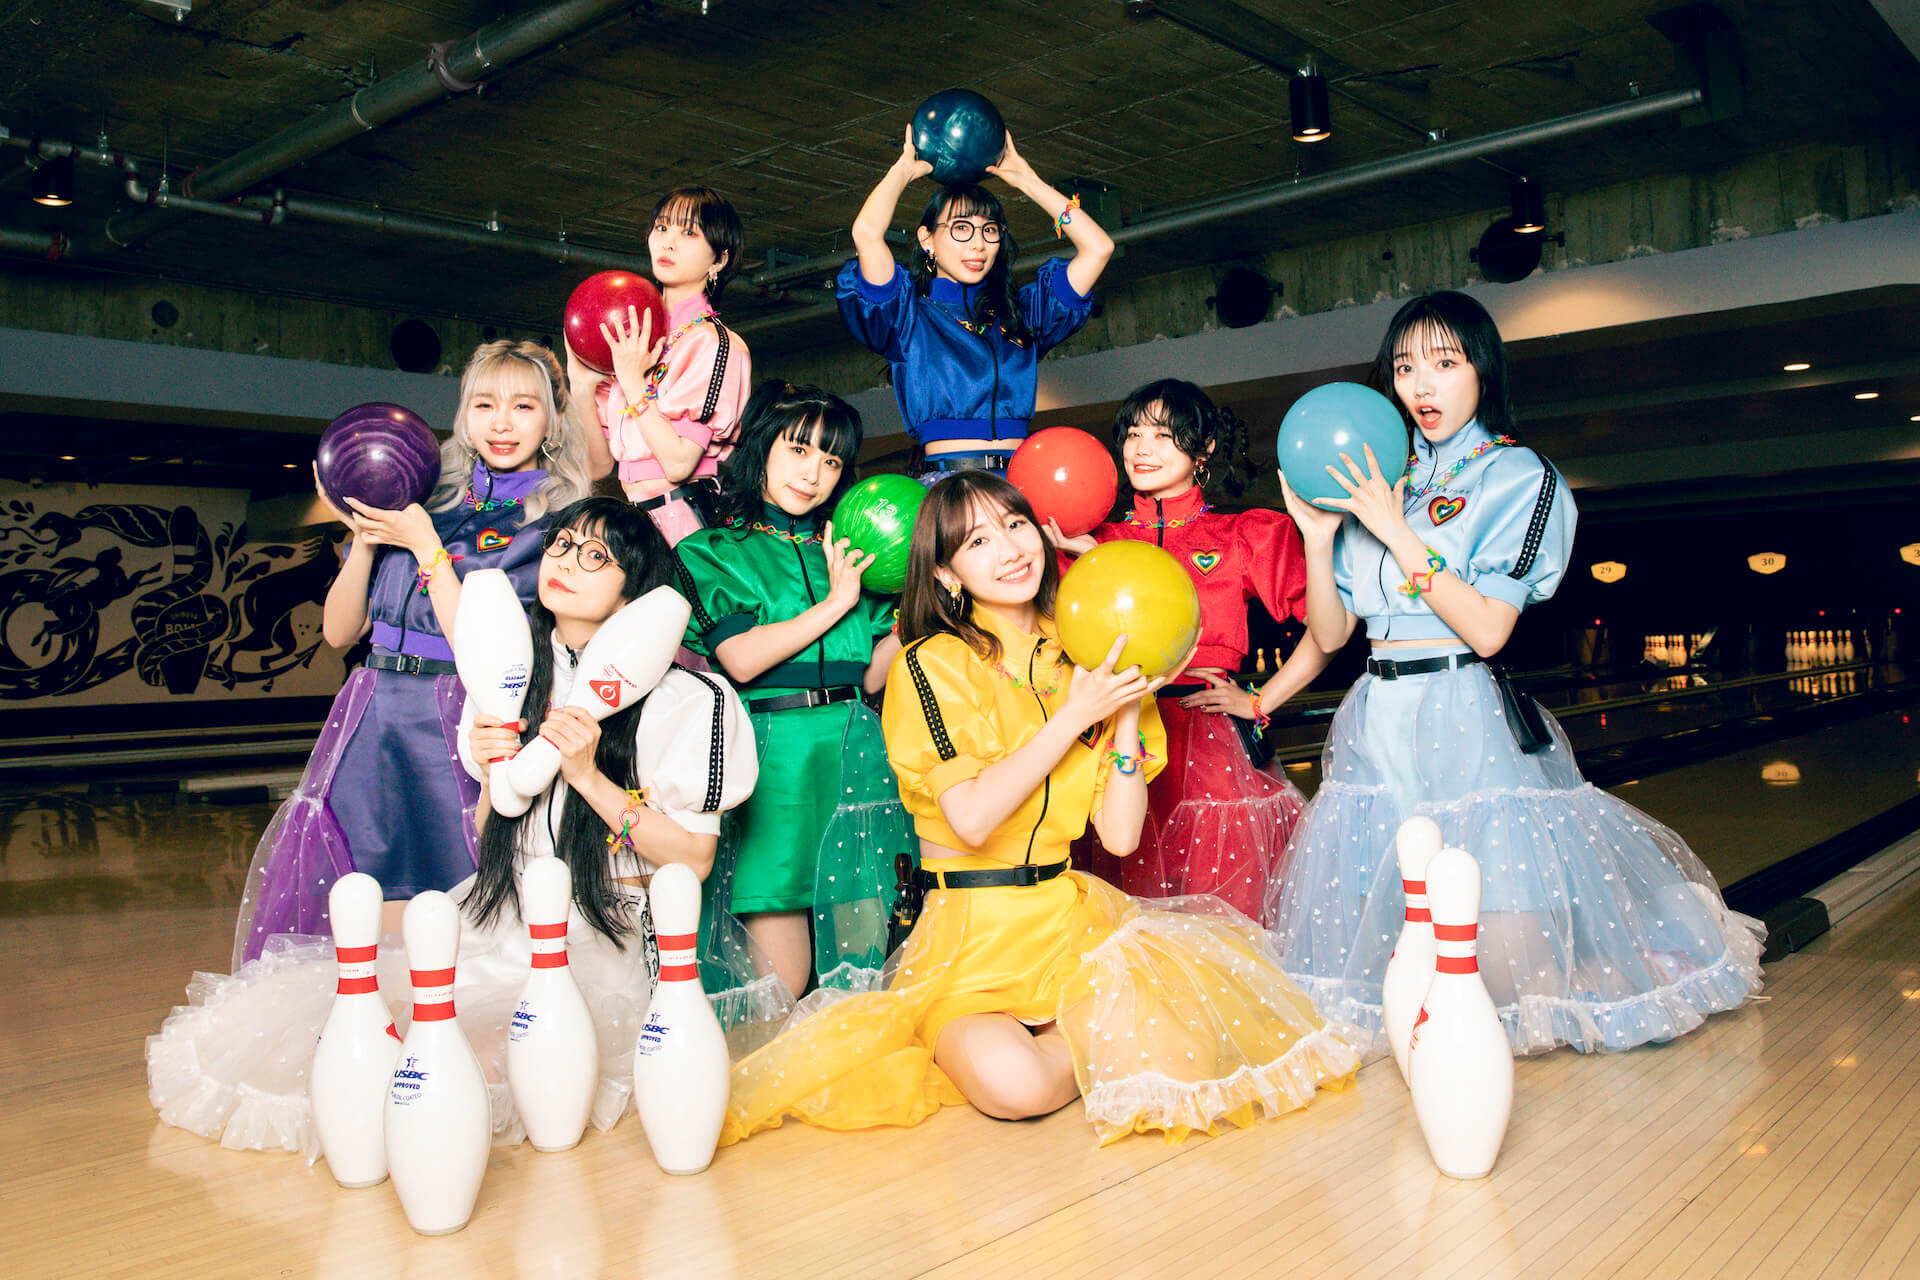 柏木由紀プロデュース・SPY、AKB48のカバー“大声ダイヤモンド”のパフォーマンス動画が公開 music220530-spy-2